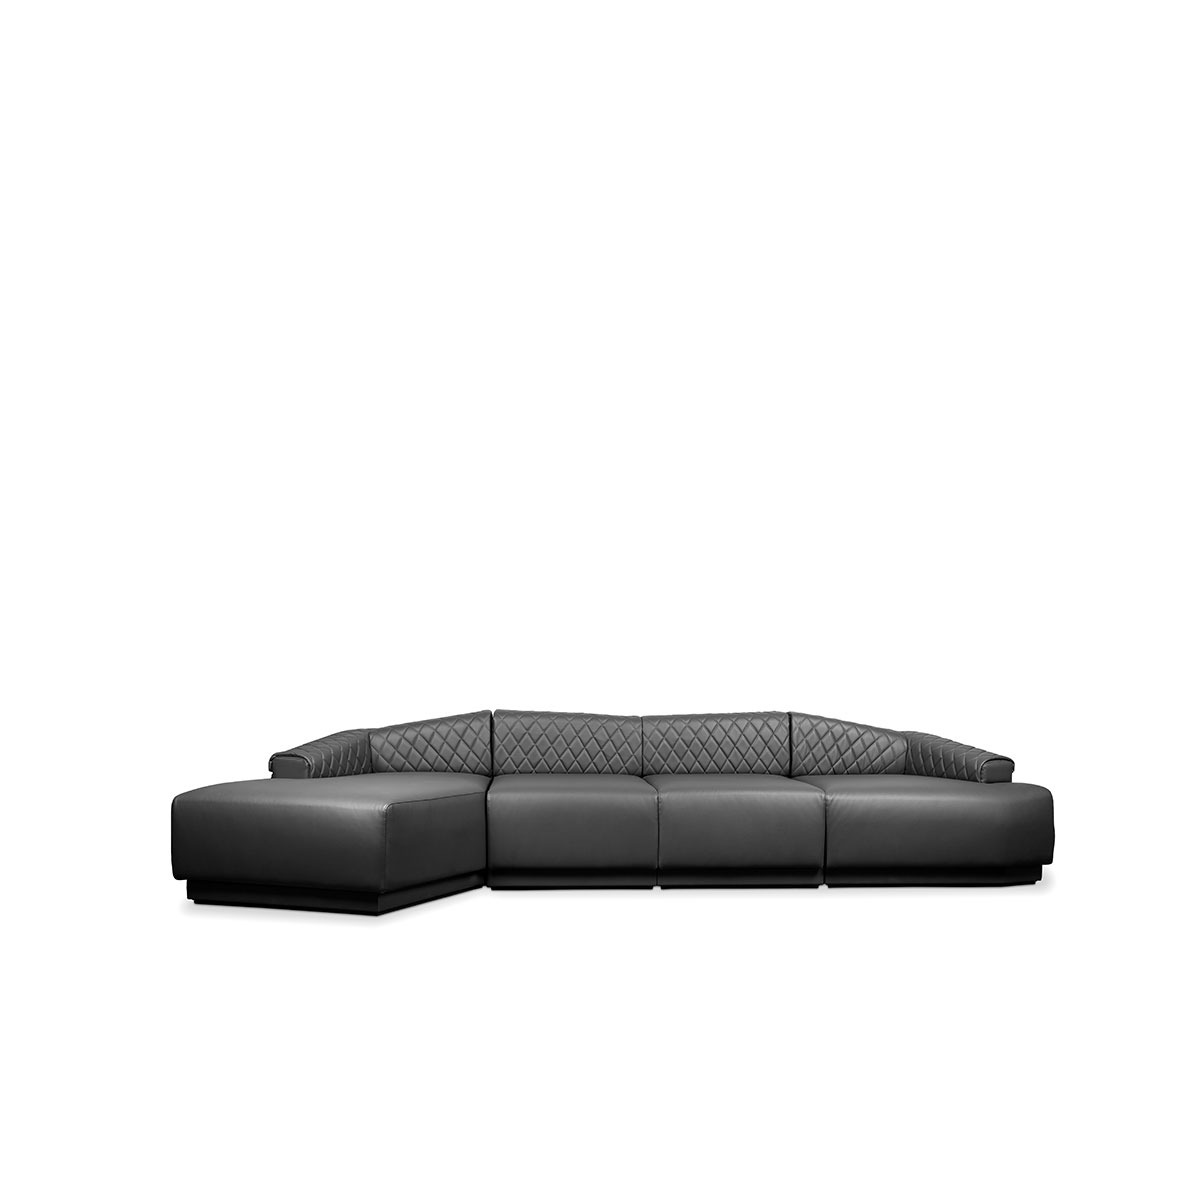 Luxxu anguis sofa general img 1200x1200 LUXXU